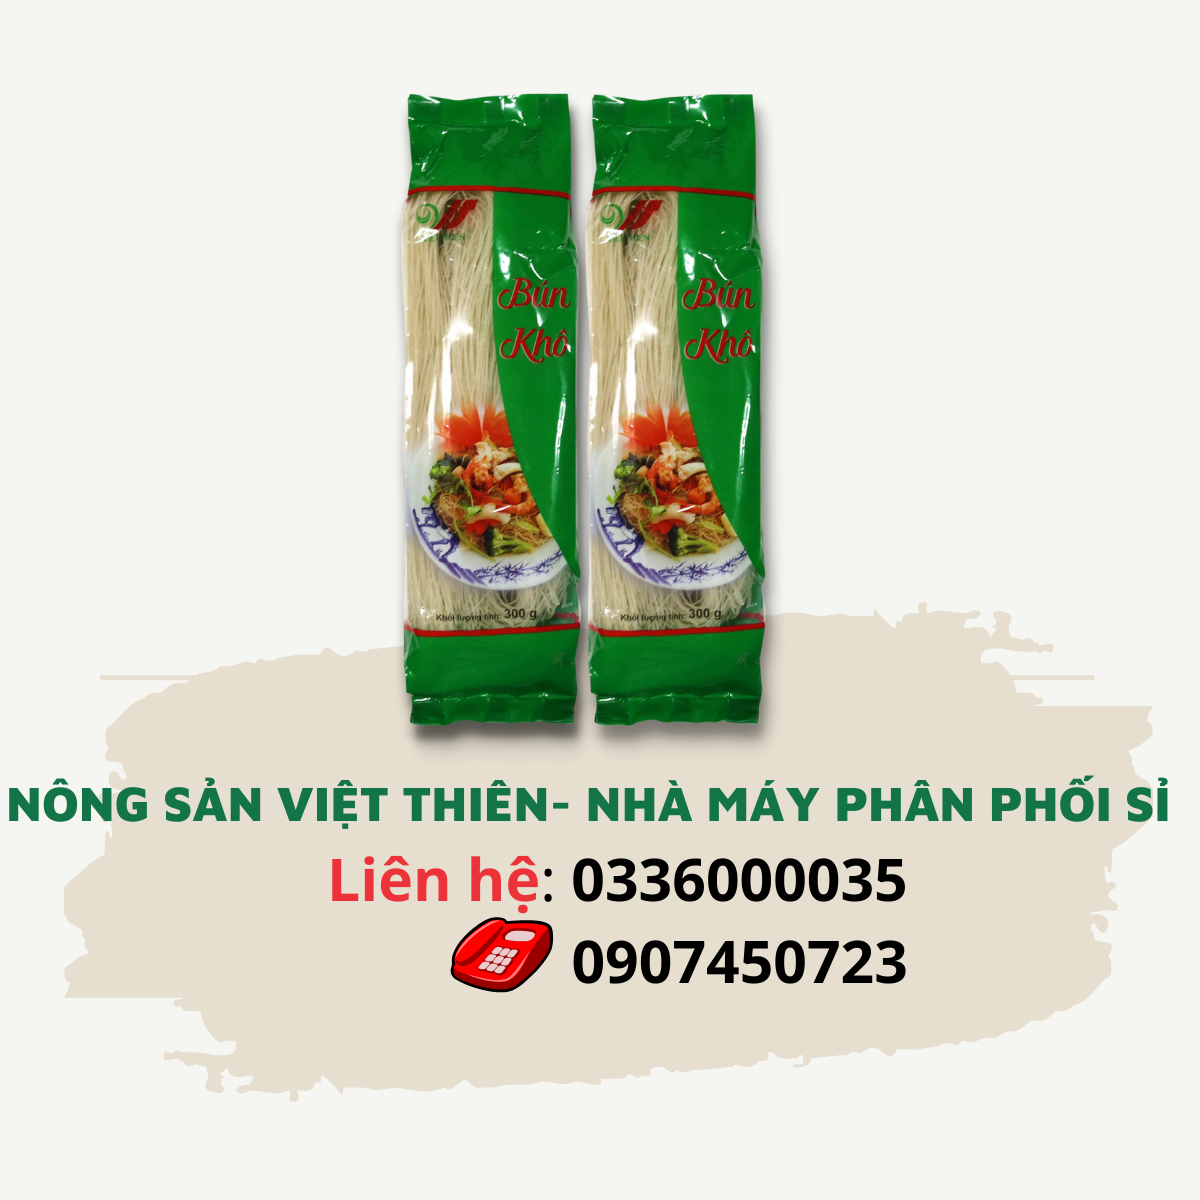 Bún khô Việt Thiên 300g, nhà máy sản xuất và phân phối nông sản Việt Thiên, giá rẻ